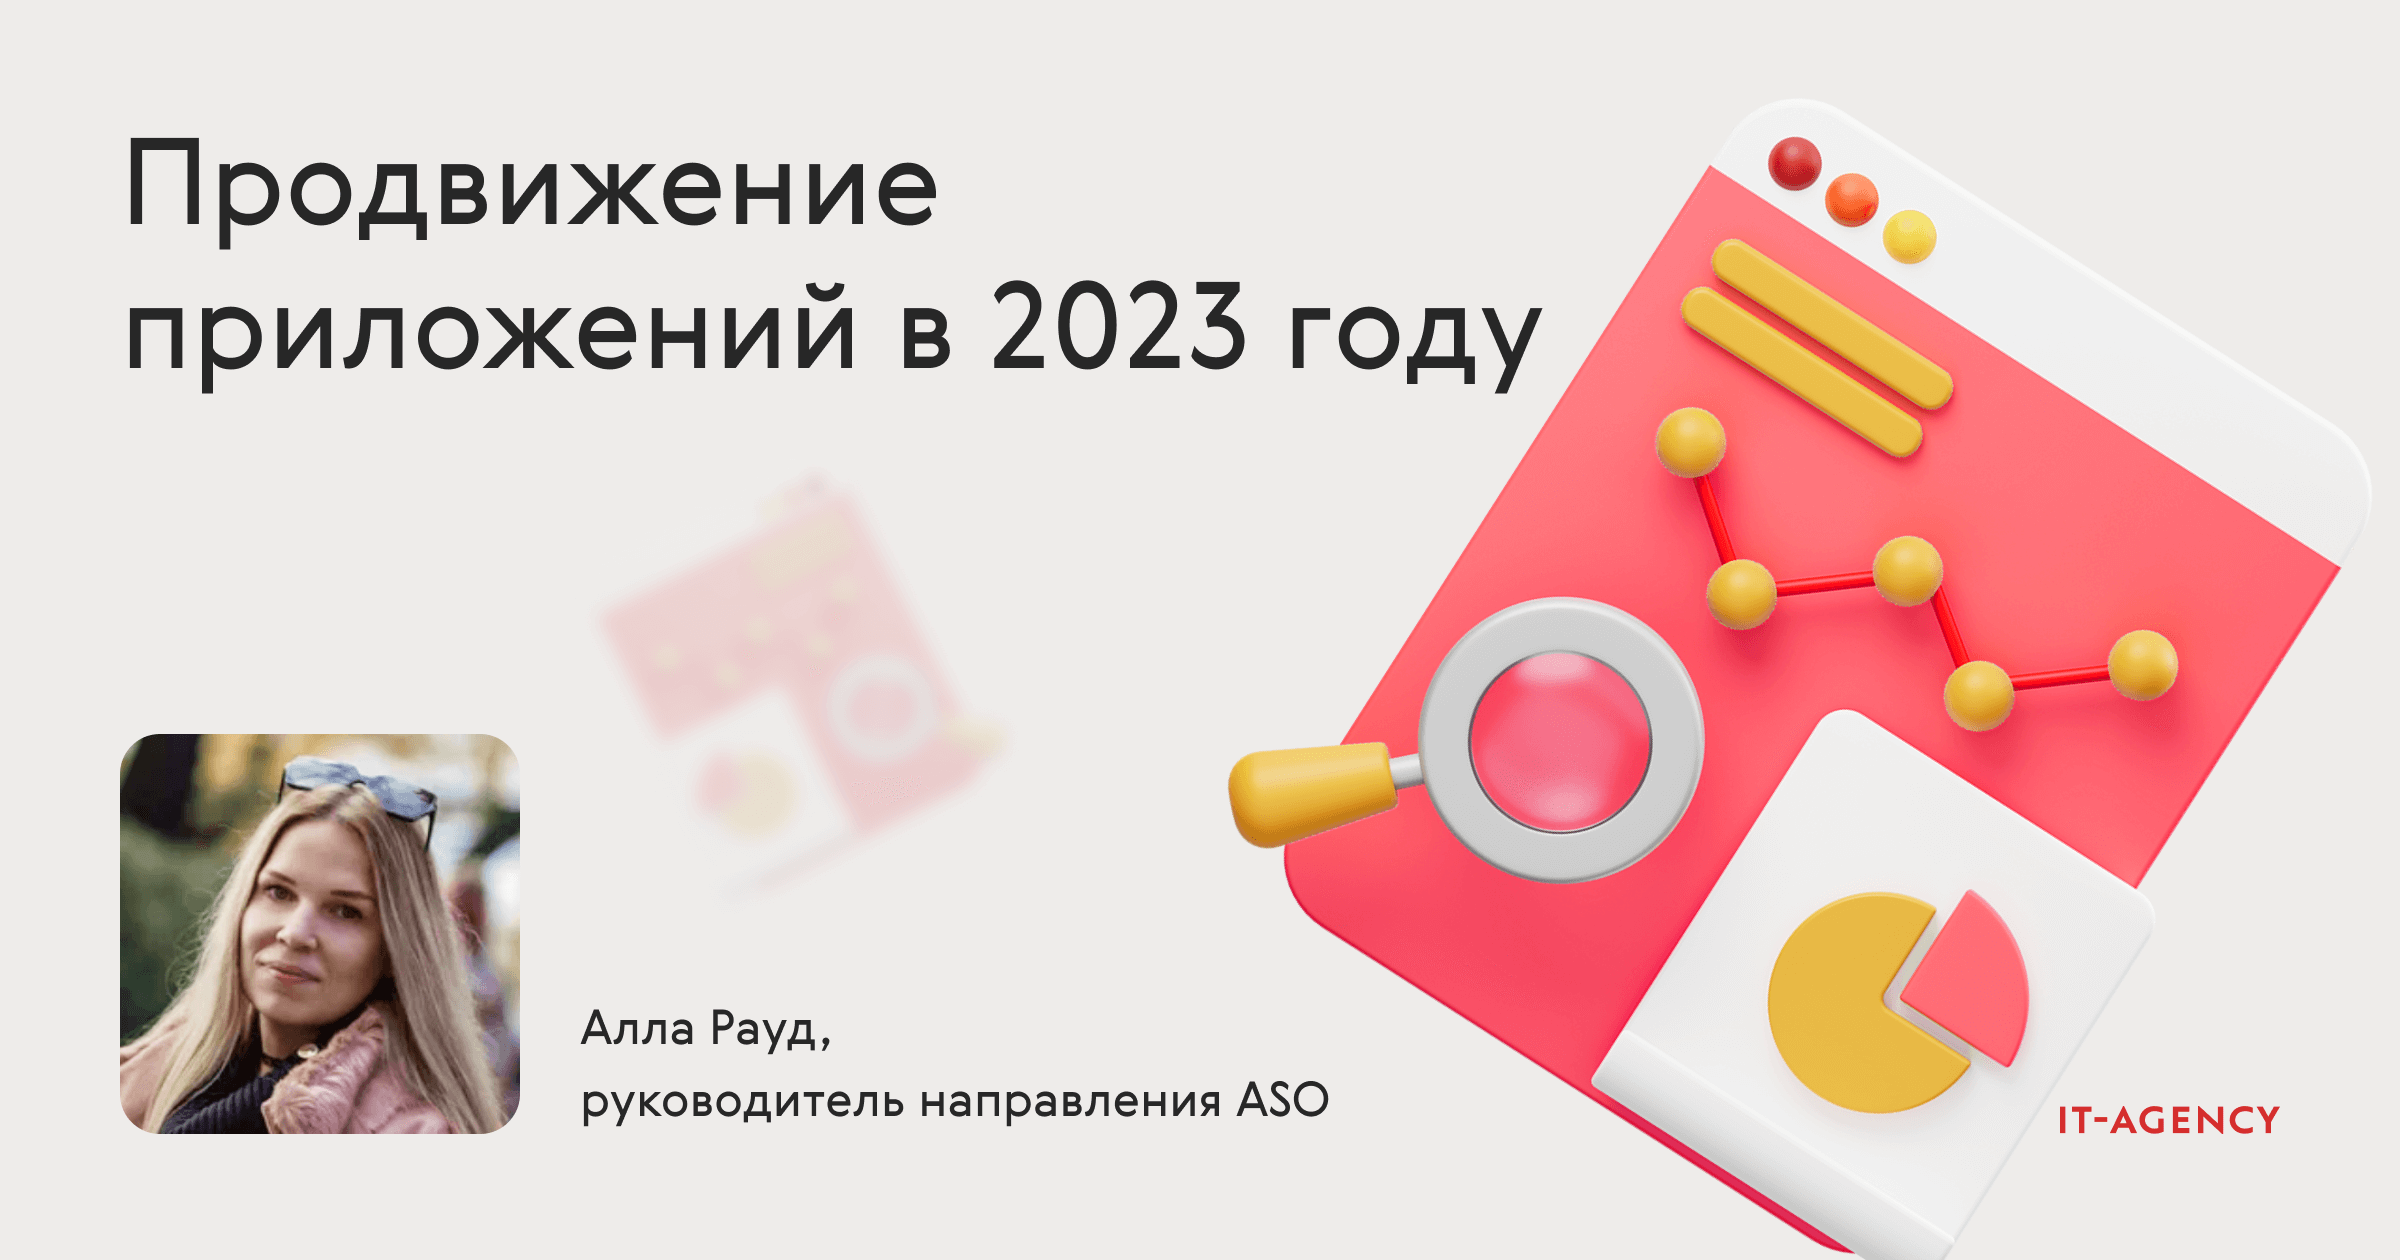 Продвижение приложений в 2023 году — эффективные стратегии и инструменты